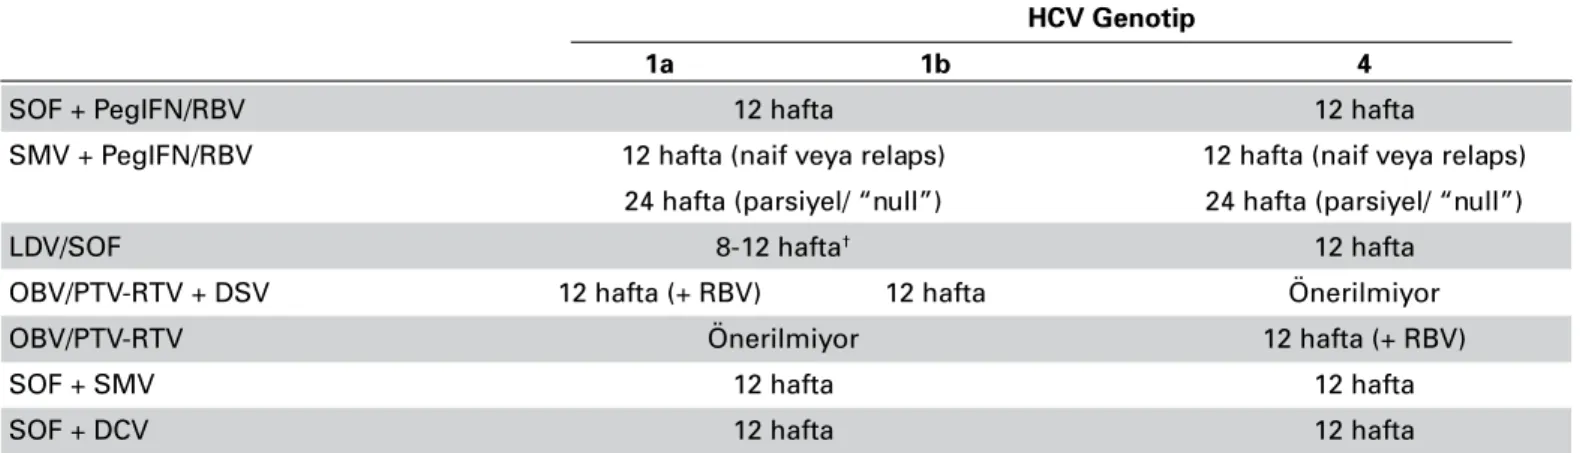 Tablo 7. Hepatit C Virusu Genotip 1 veya 4 İnfeksiyonu Olan Kompanse Sirotik Tedavi Naif veya PegIFN + RBV Deneyimli  Hastalarda Tedavi Önerileri* 